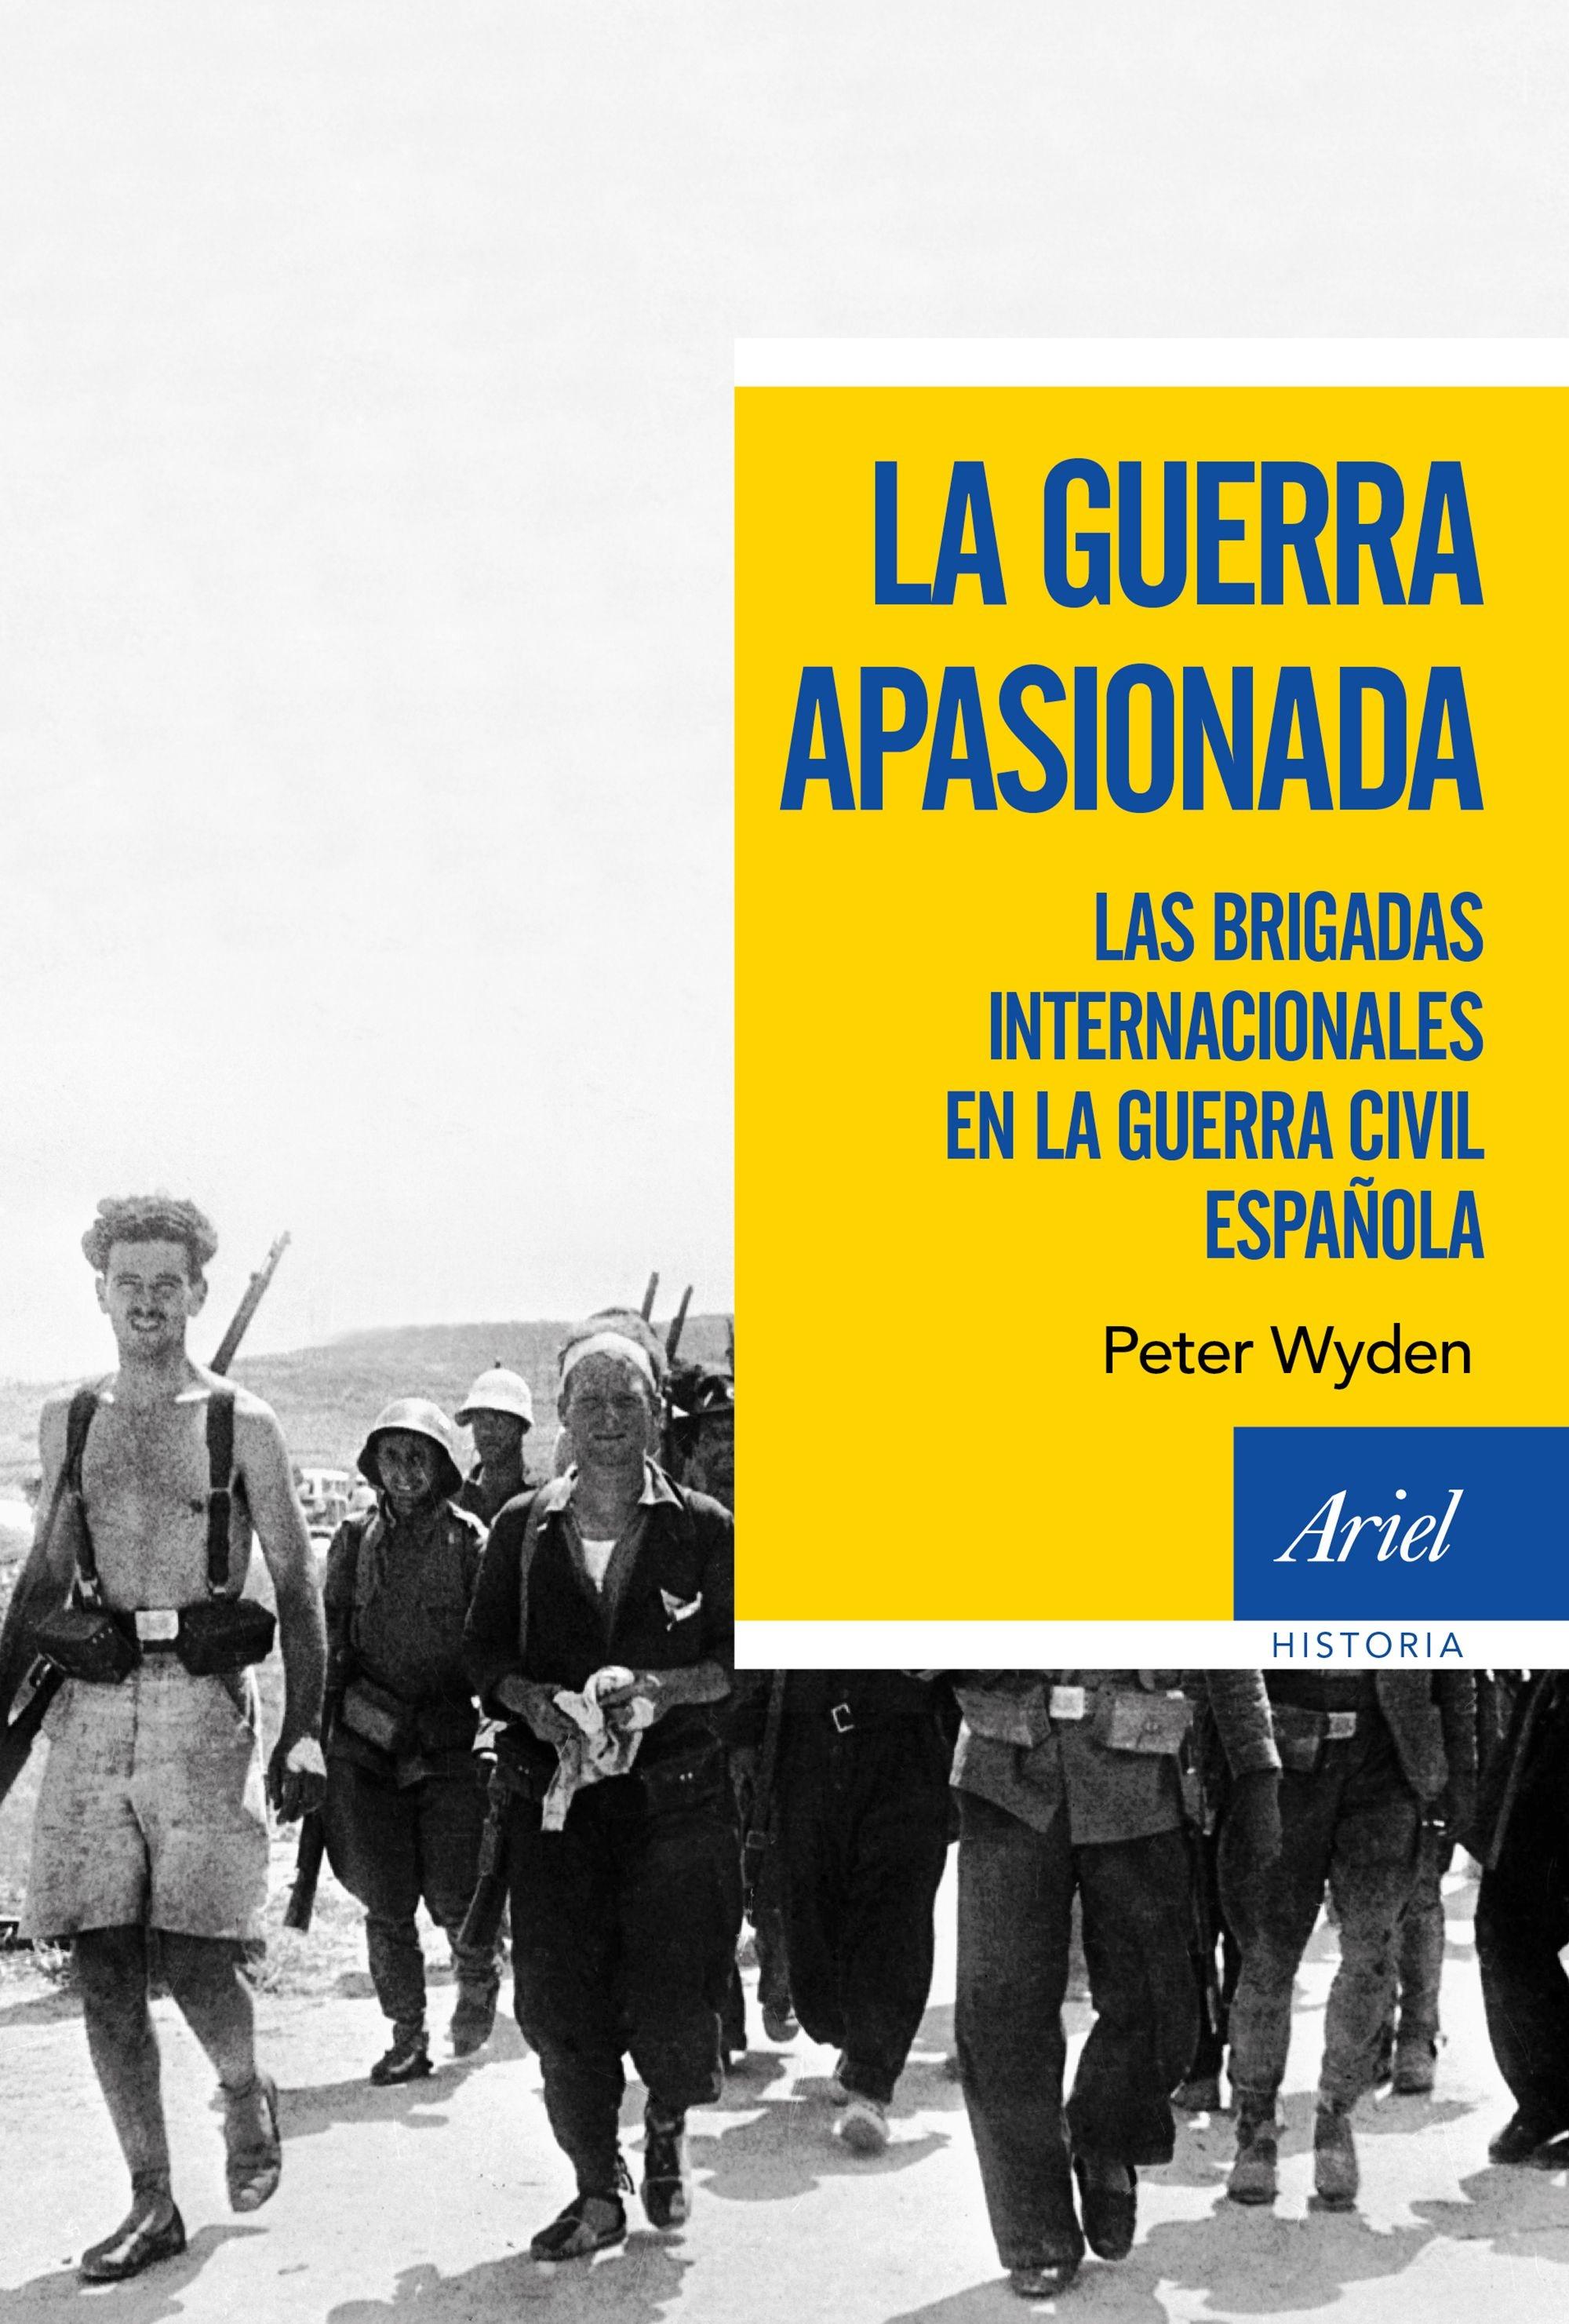 La guerra apasionada "Las brigadas internacionales en la guerra civil española". 